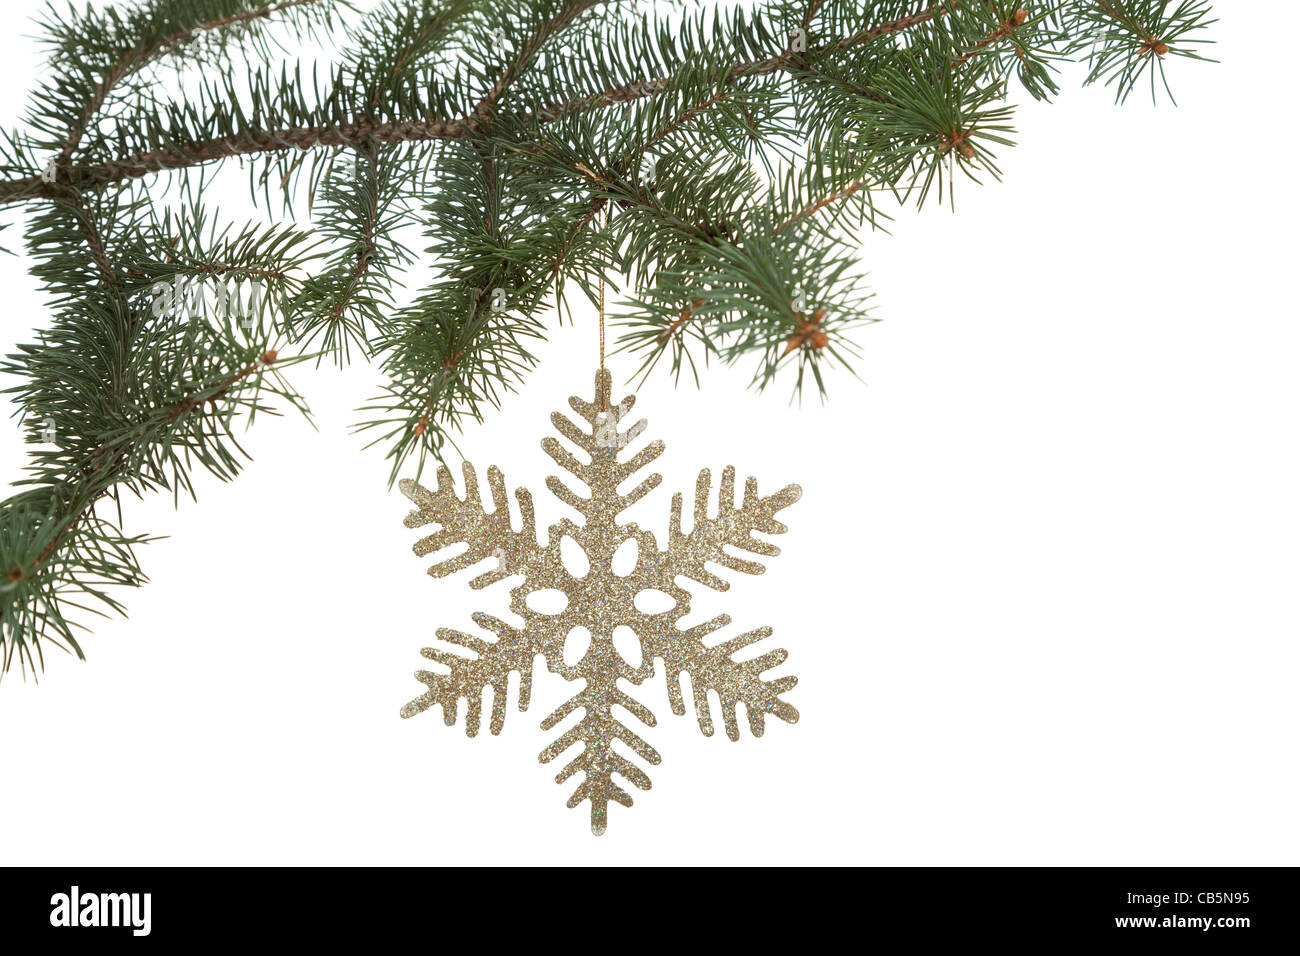 Weihnachtsbaum mit goldenen Stern auf weißem Hintergrund Stockfoto